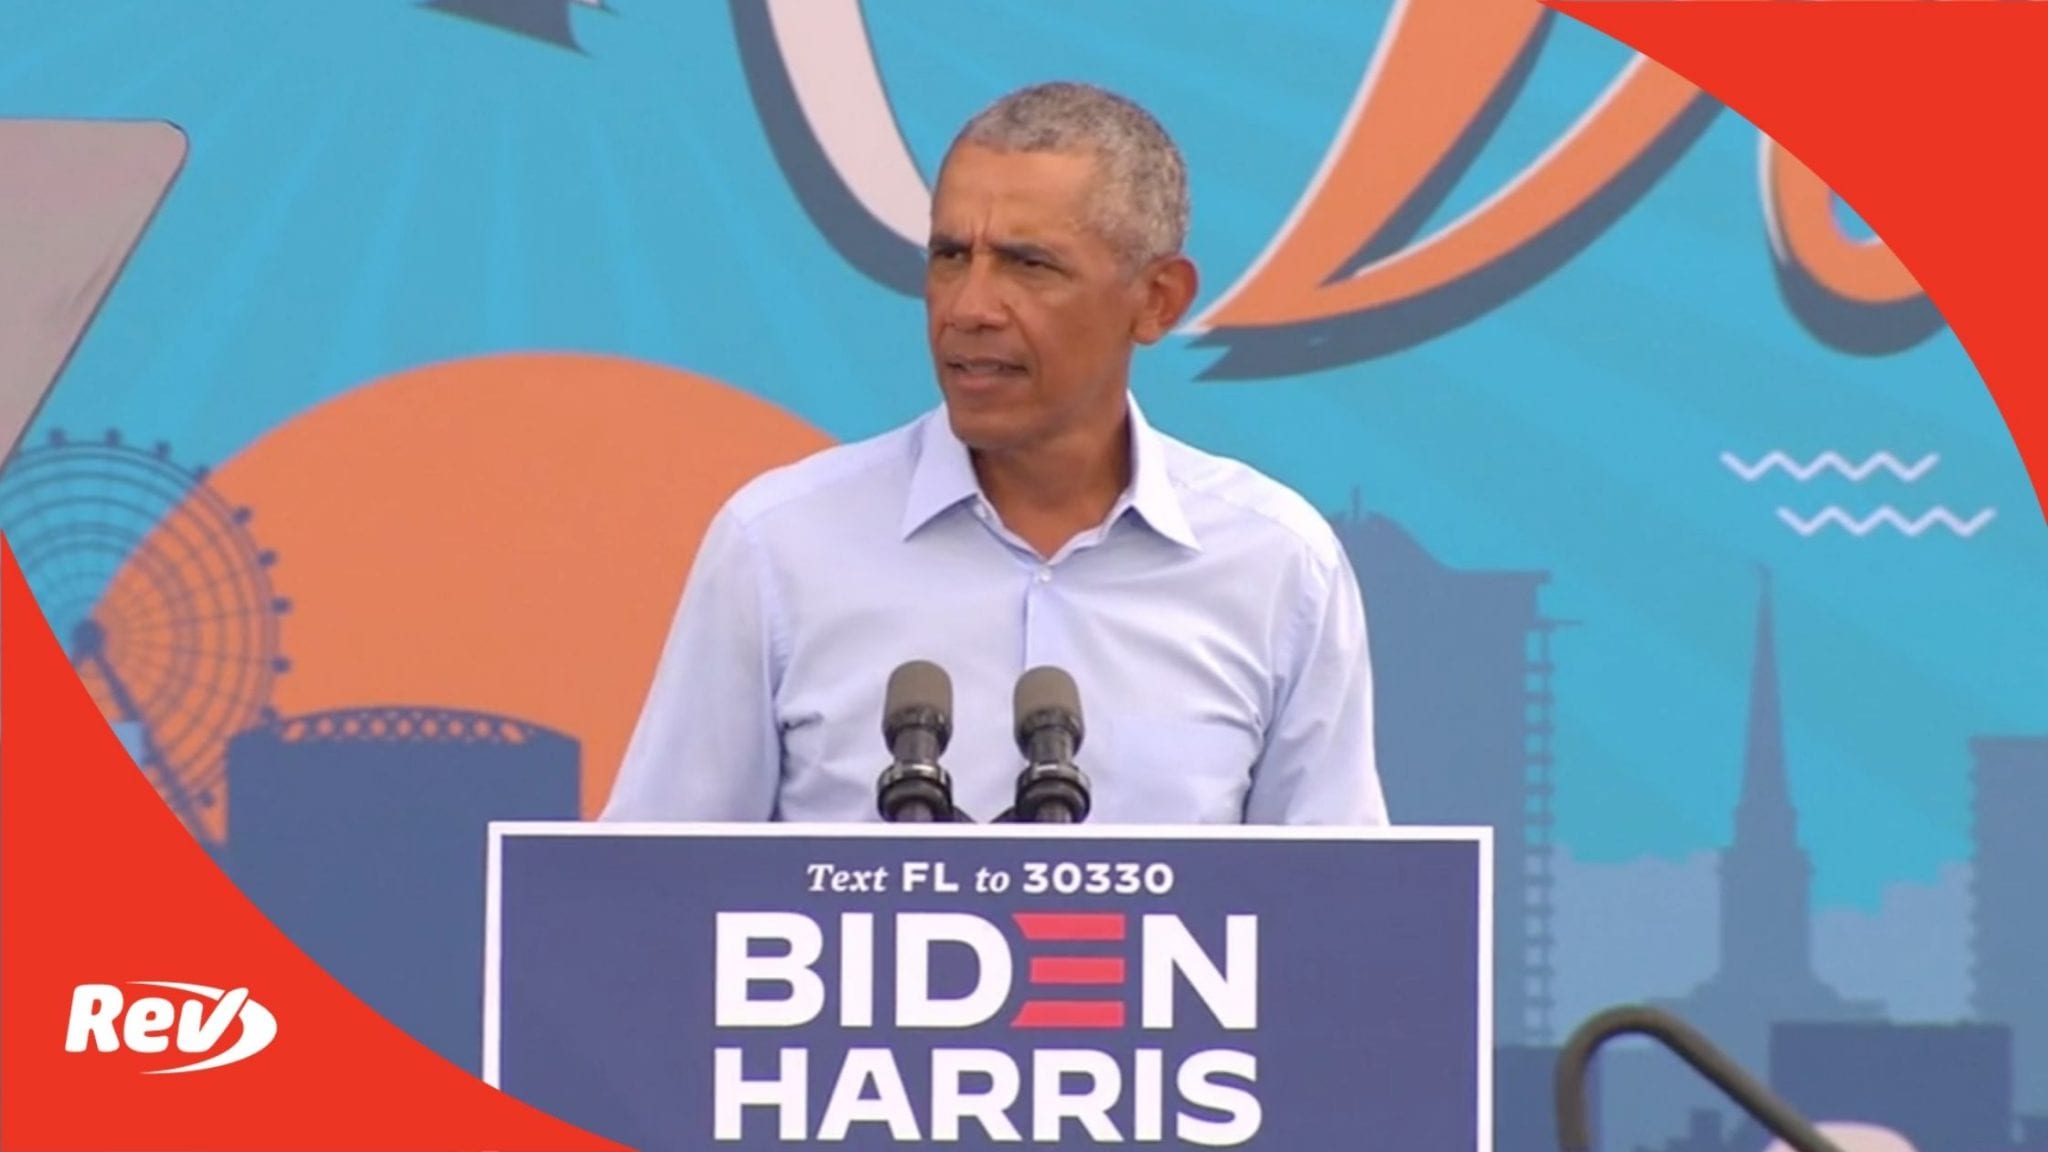 Barack Obama Campaign Speech for Joe Biden Transcript Orlando October 27